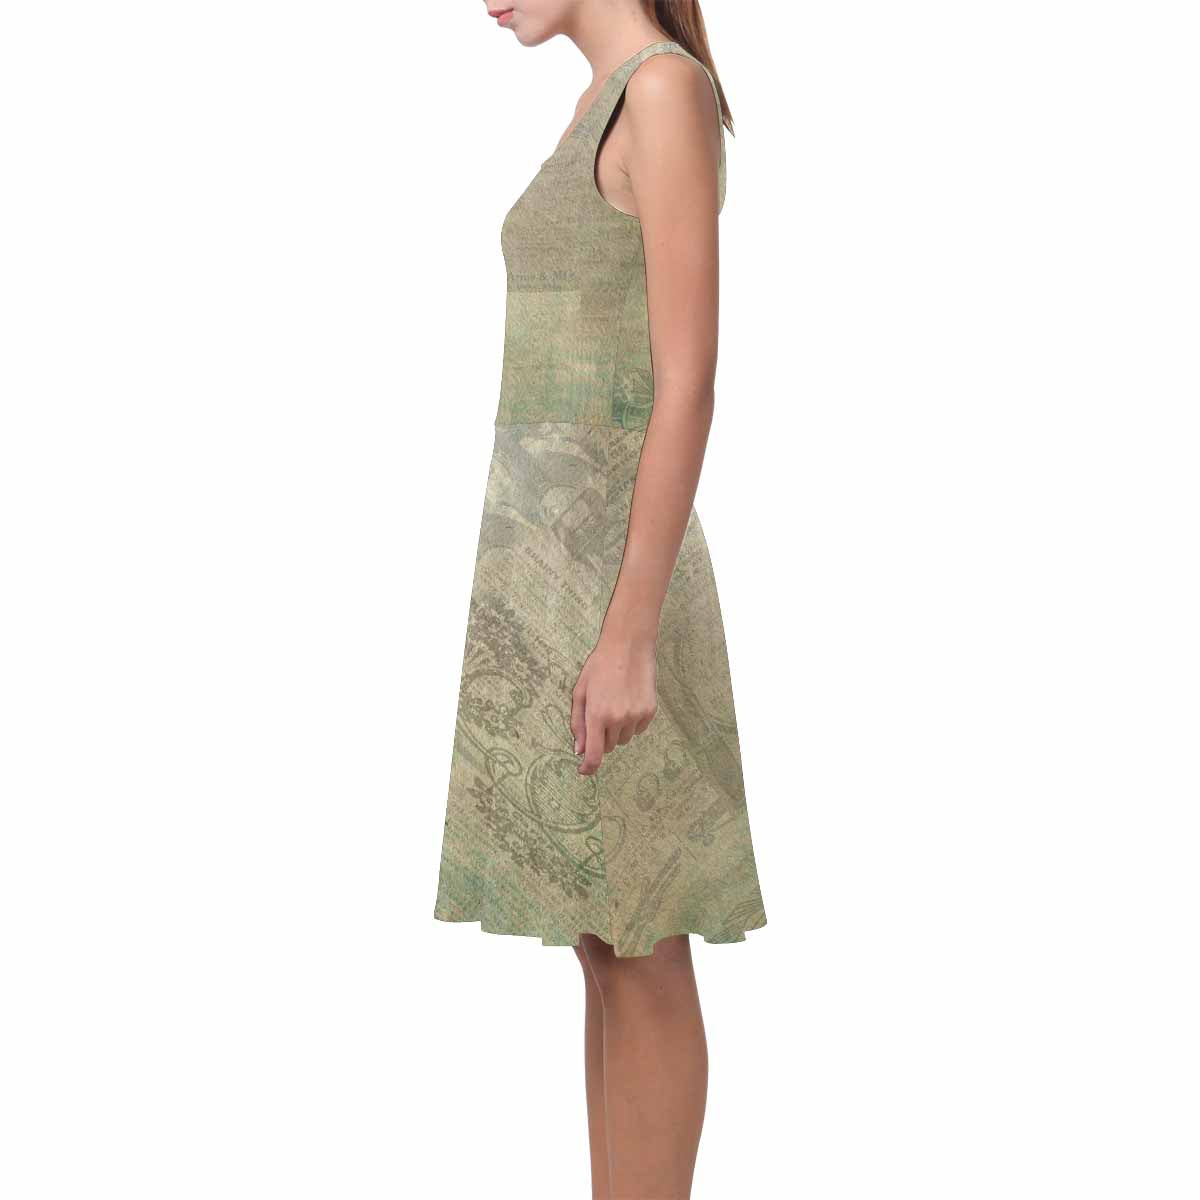 Antique General summer dress, MODEL 09534, design 32